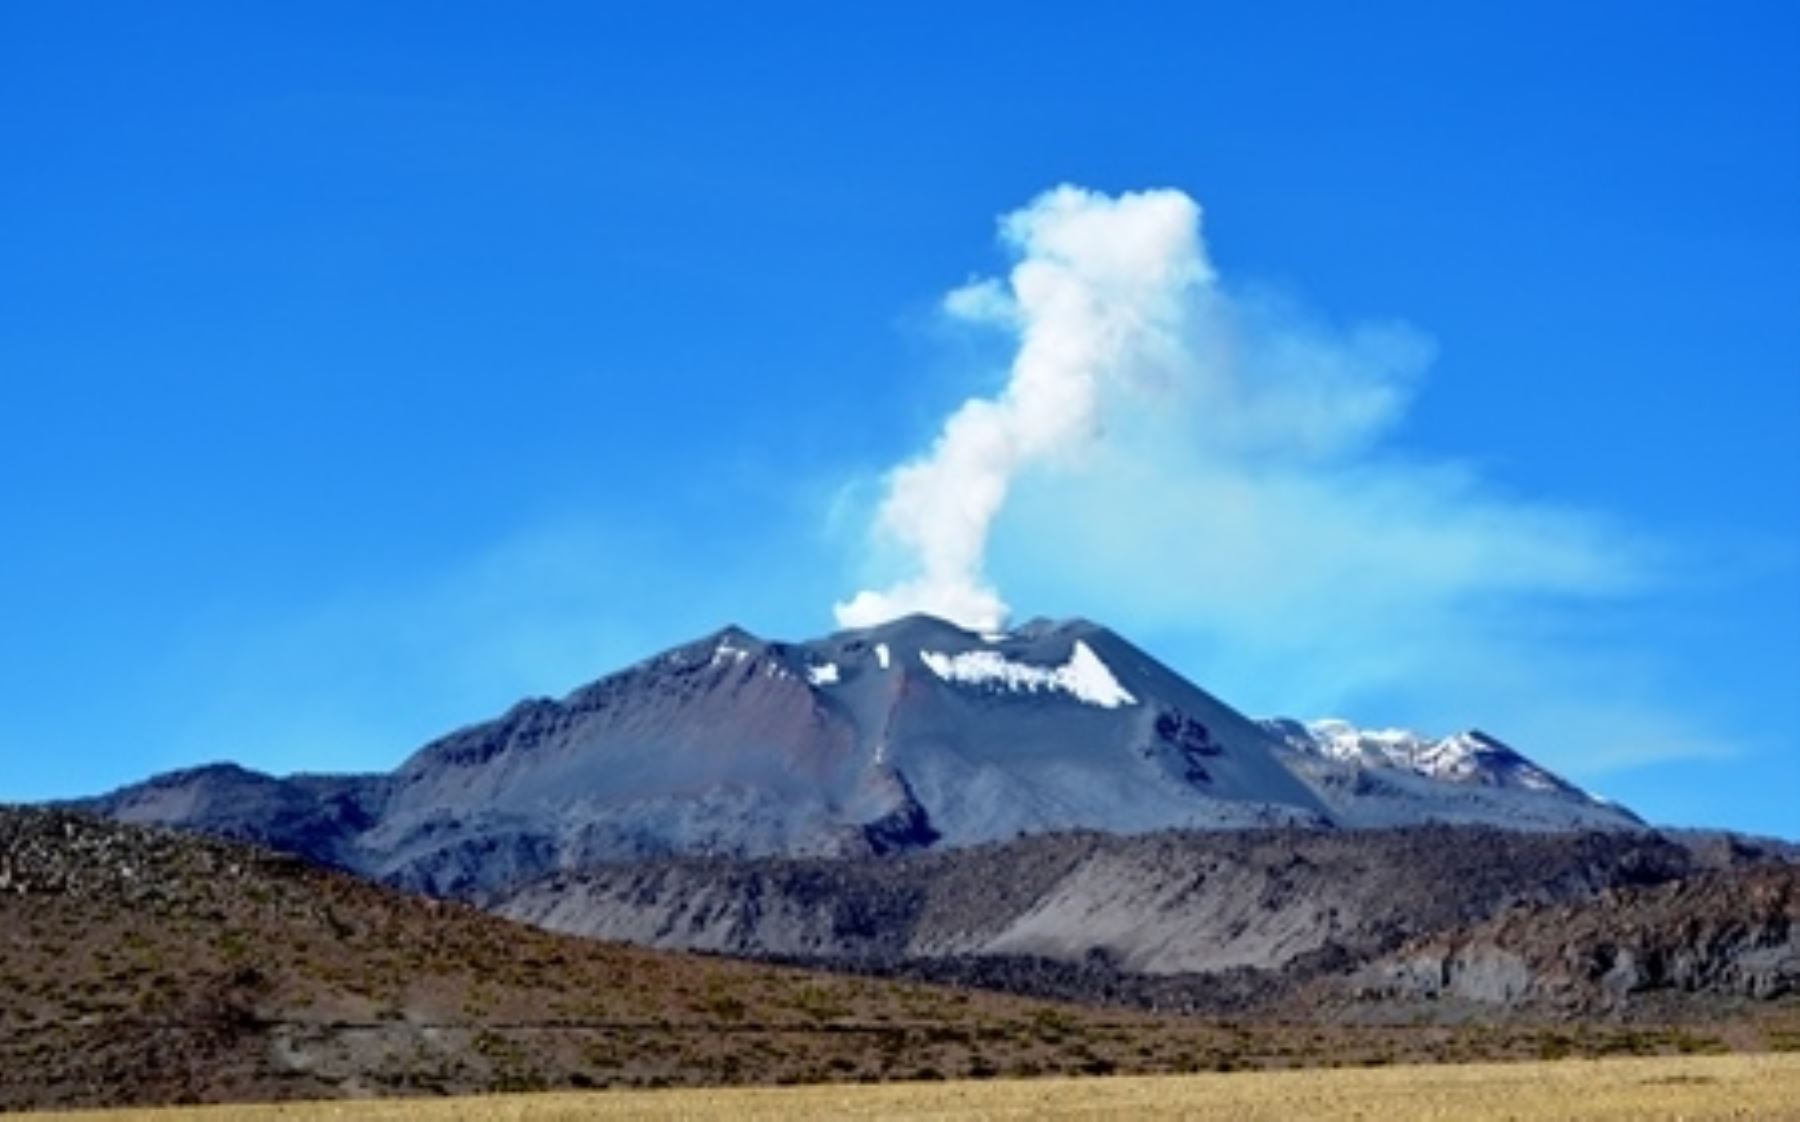 El volcán Sabancaya (Arequipa) continuará con alerta naranja, debido a que la actividad eruptiva se mantiene en niveles moderados, informó el IGP. Foto: ANDINA/archivo